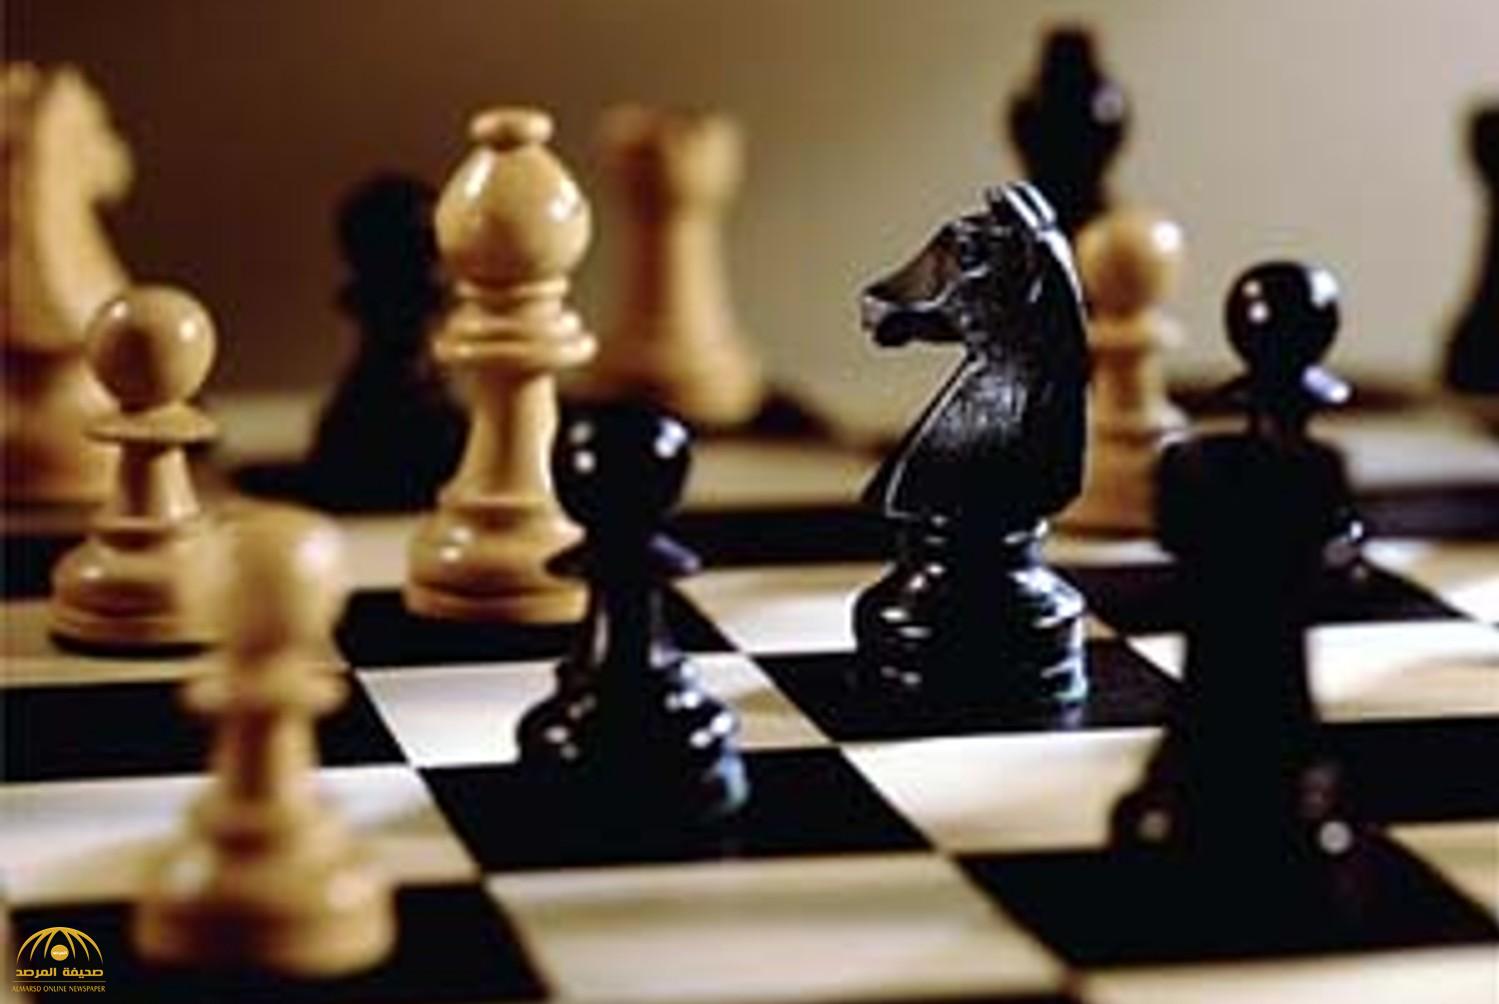 لأول مرة  في السعودية .. الرياض تستضيف بطولة الملك سلمان العالمية للشطرنج بمشاركة أبرز نجوم اللعبة في العالم